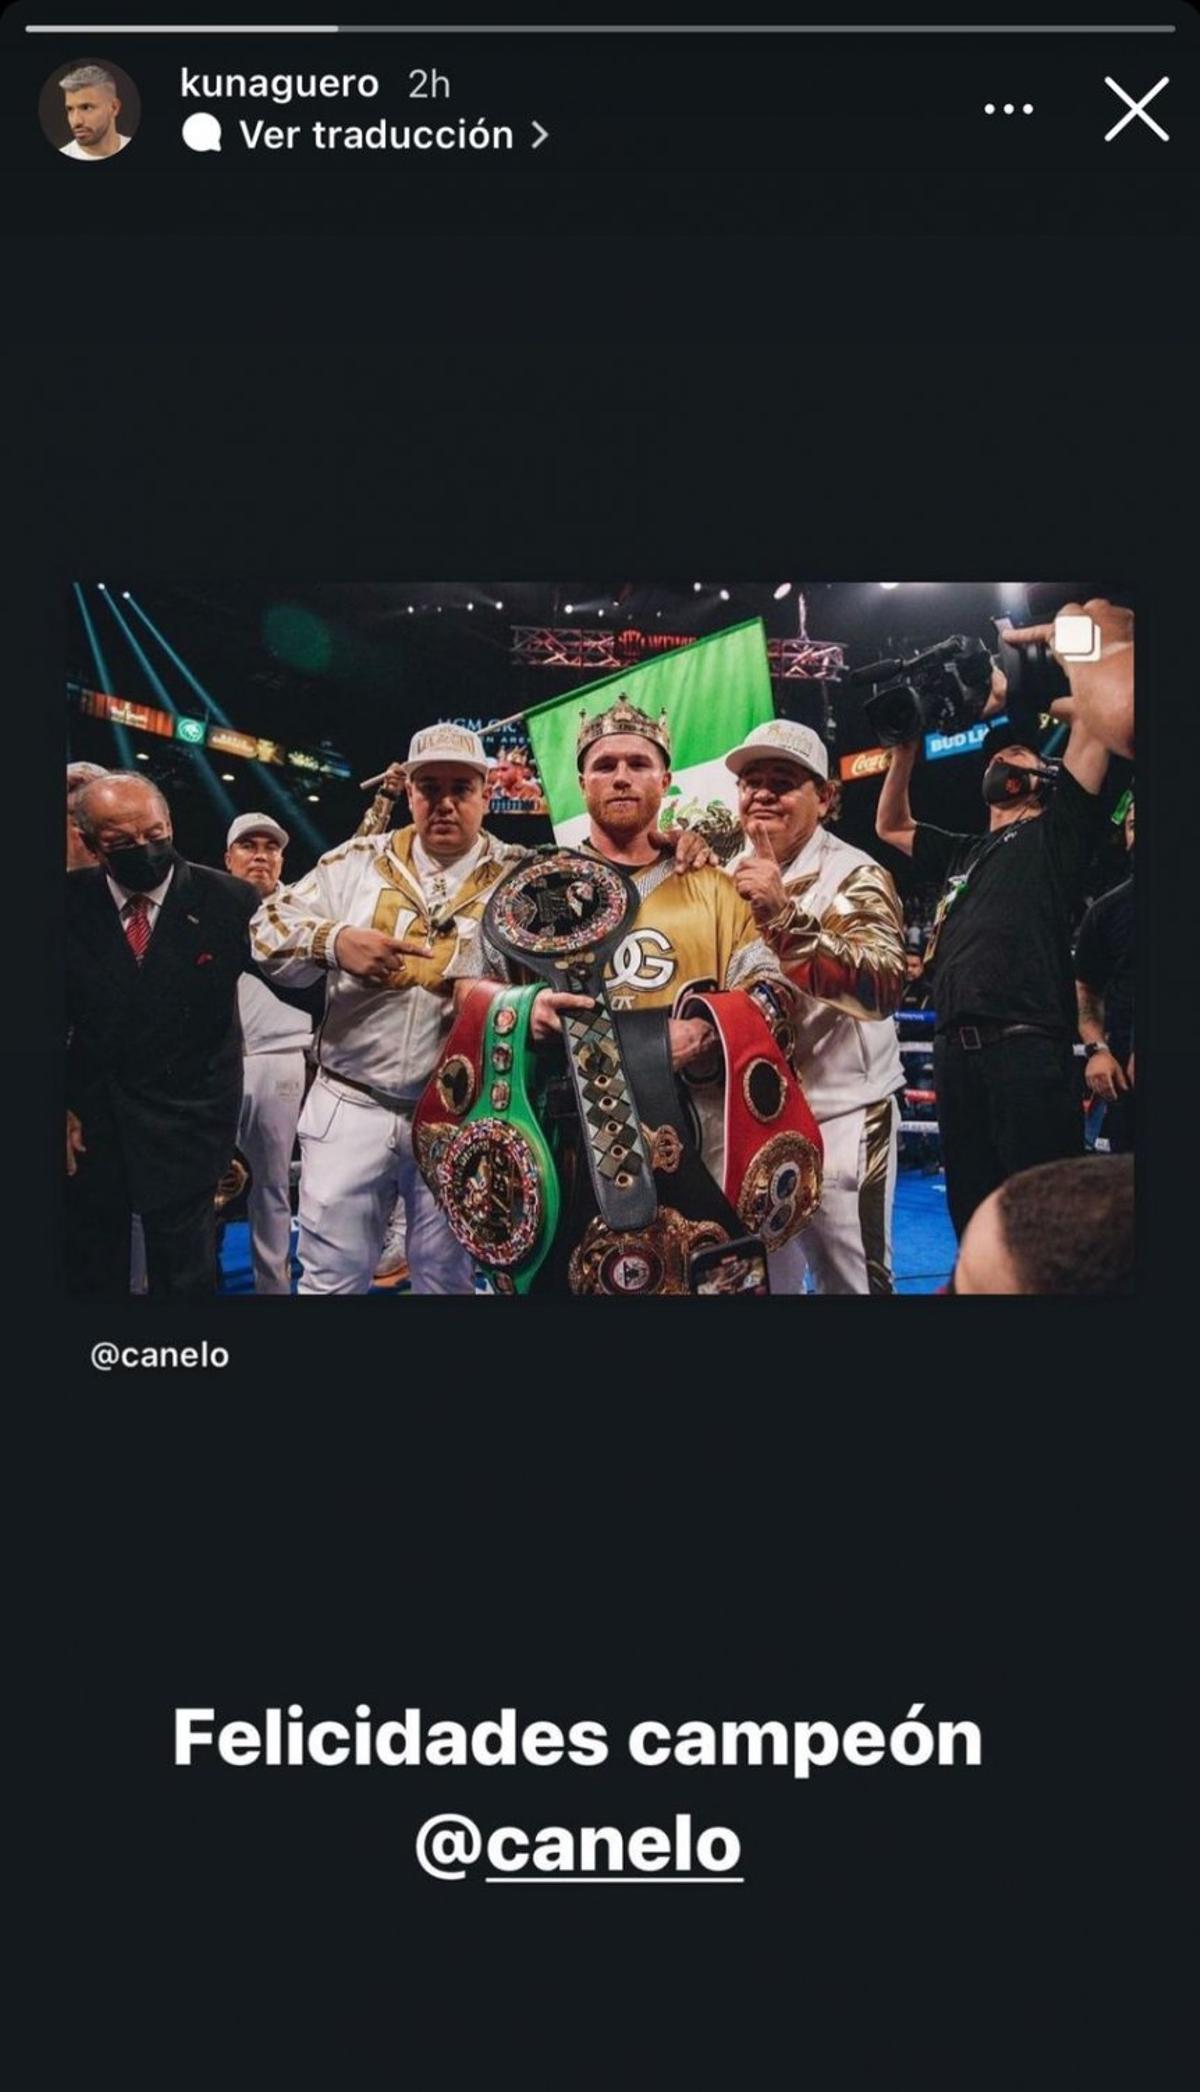 Foto: El Kun Agüero envía un mensaje a Canelo, el conocido boxeador mexicano